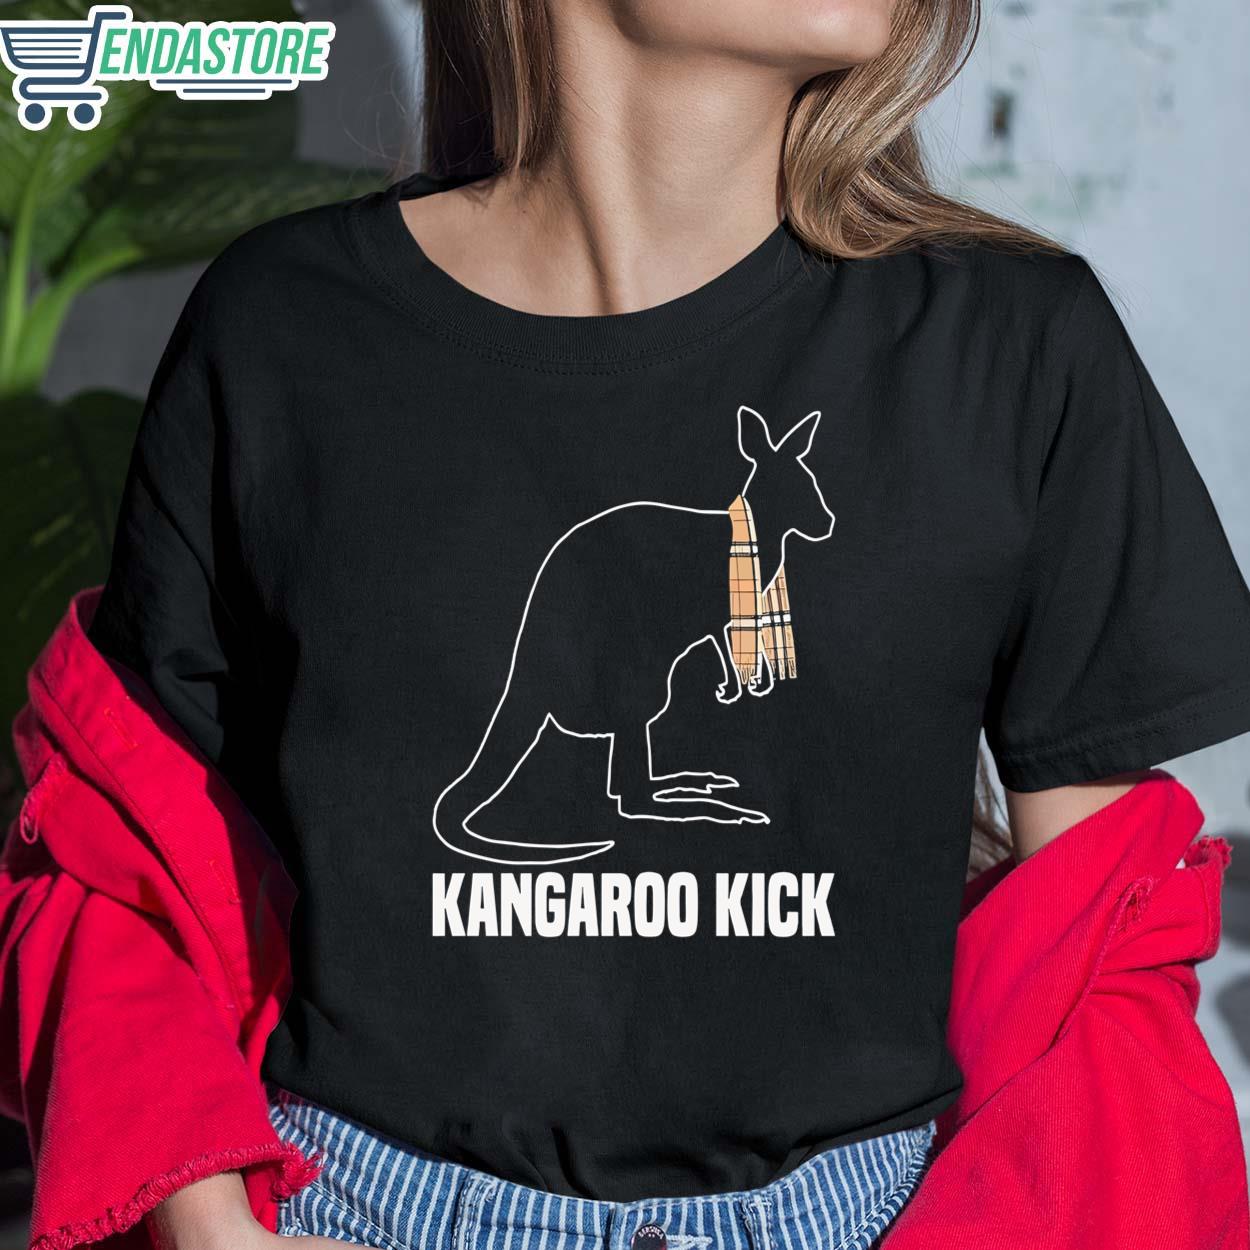 MJF Shirt Kick Kangaroo